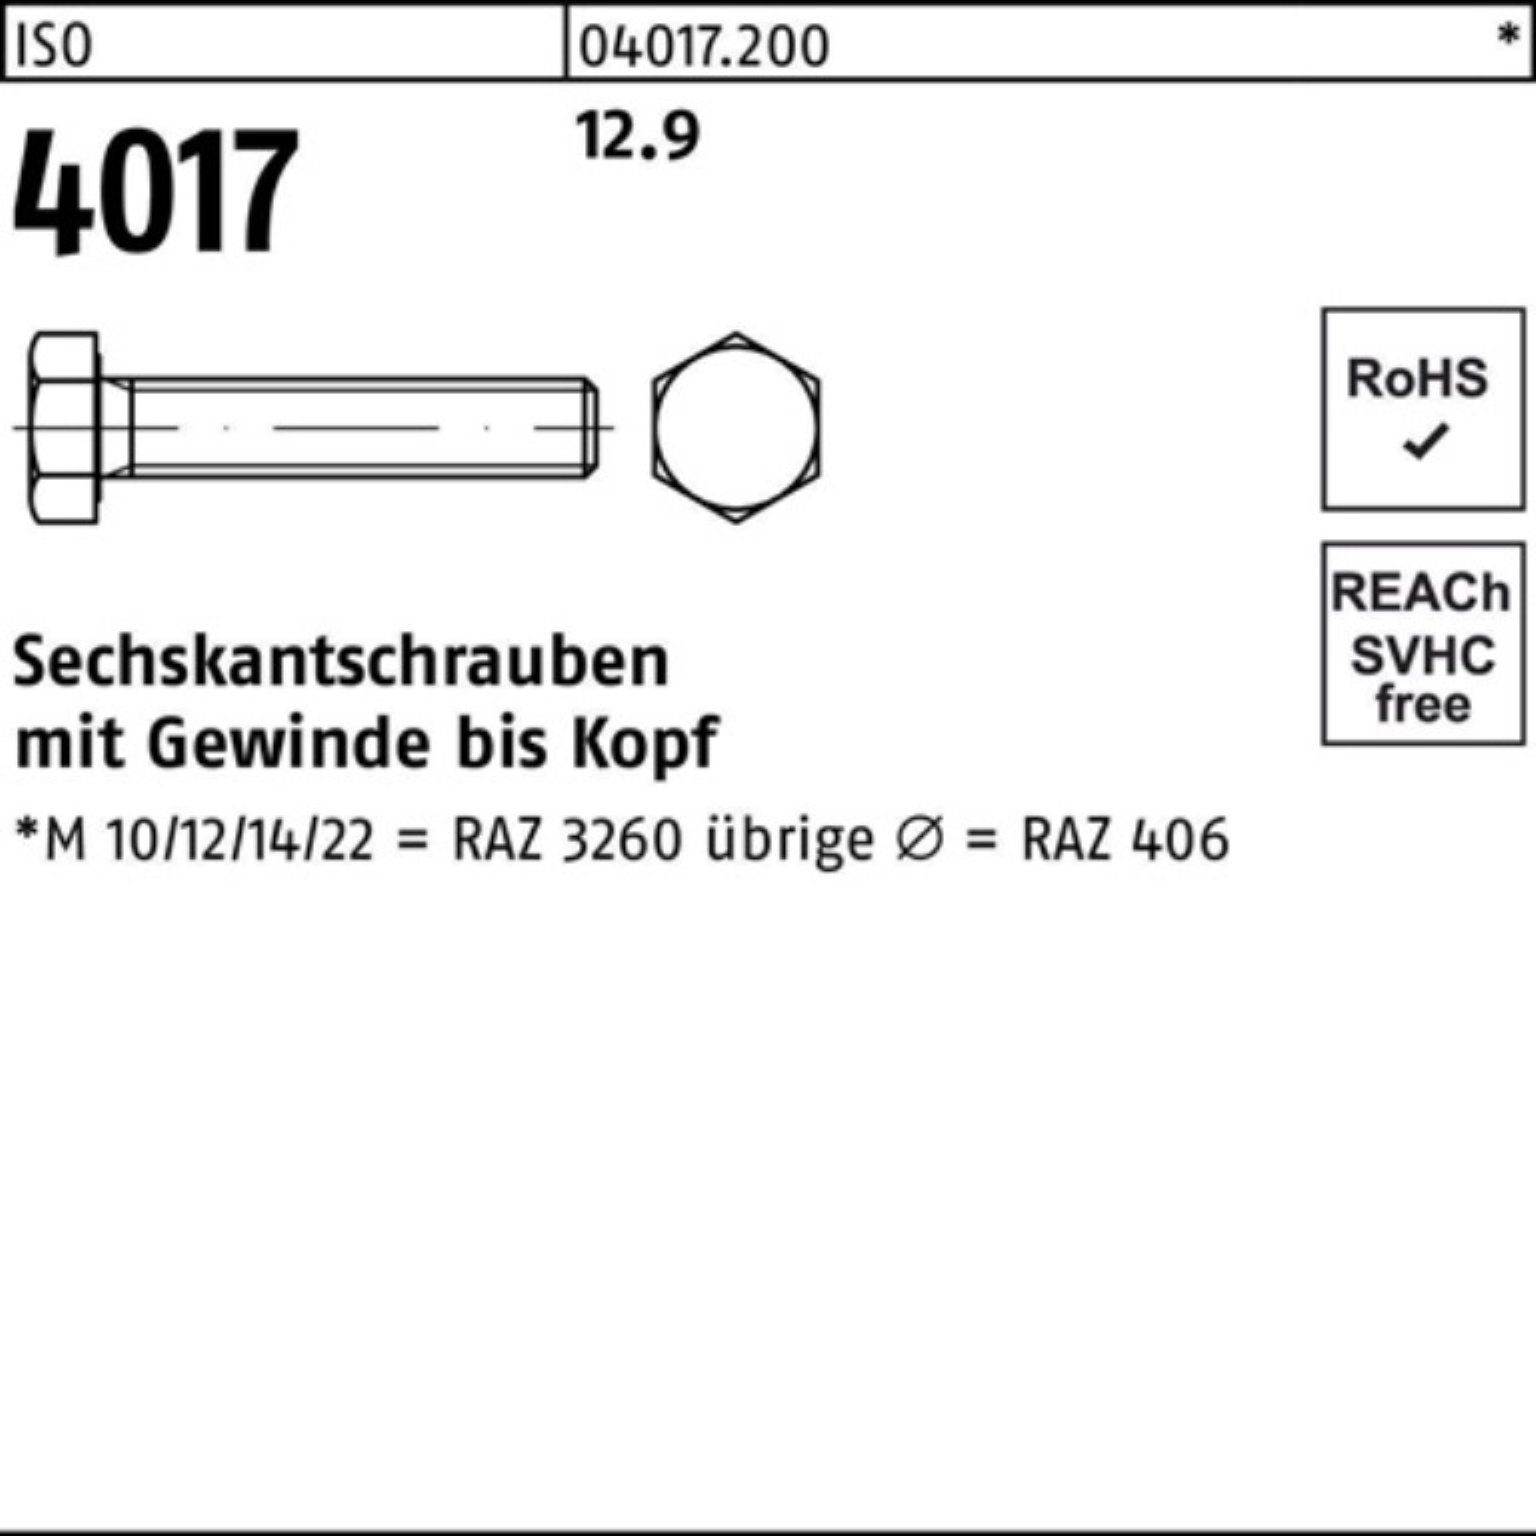 90 4017 Bufab VG ISO 12.9 25 ISO Pack 40 Sechskantschraube M16x 100er Sechskantschraube Stück